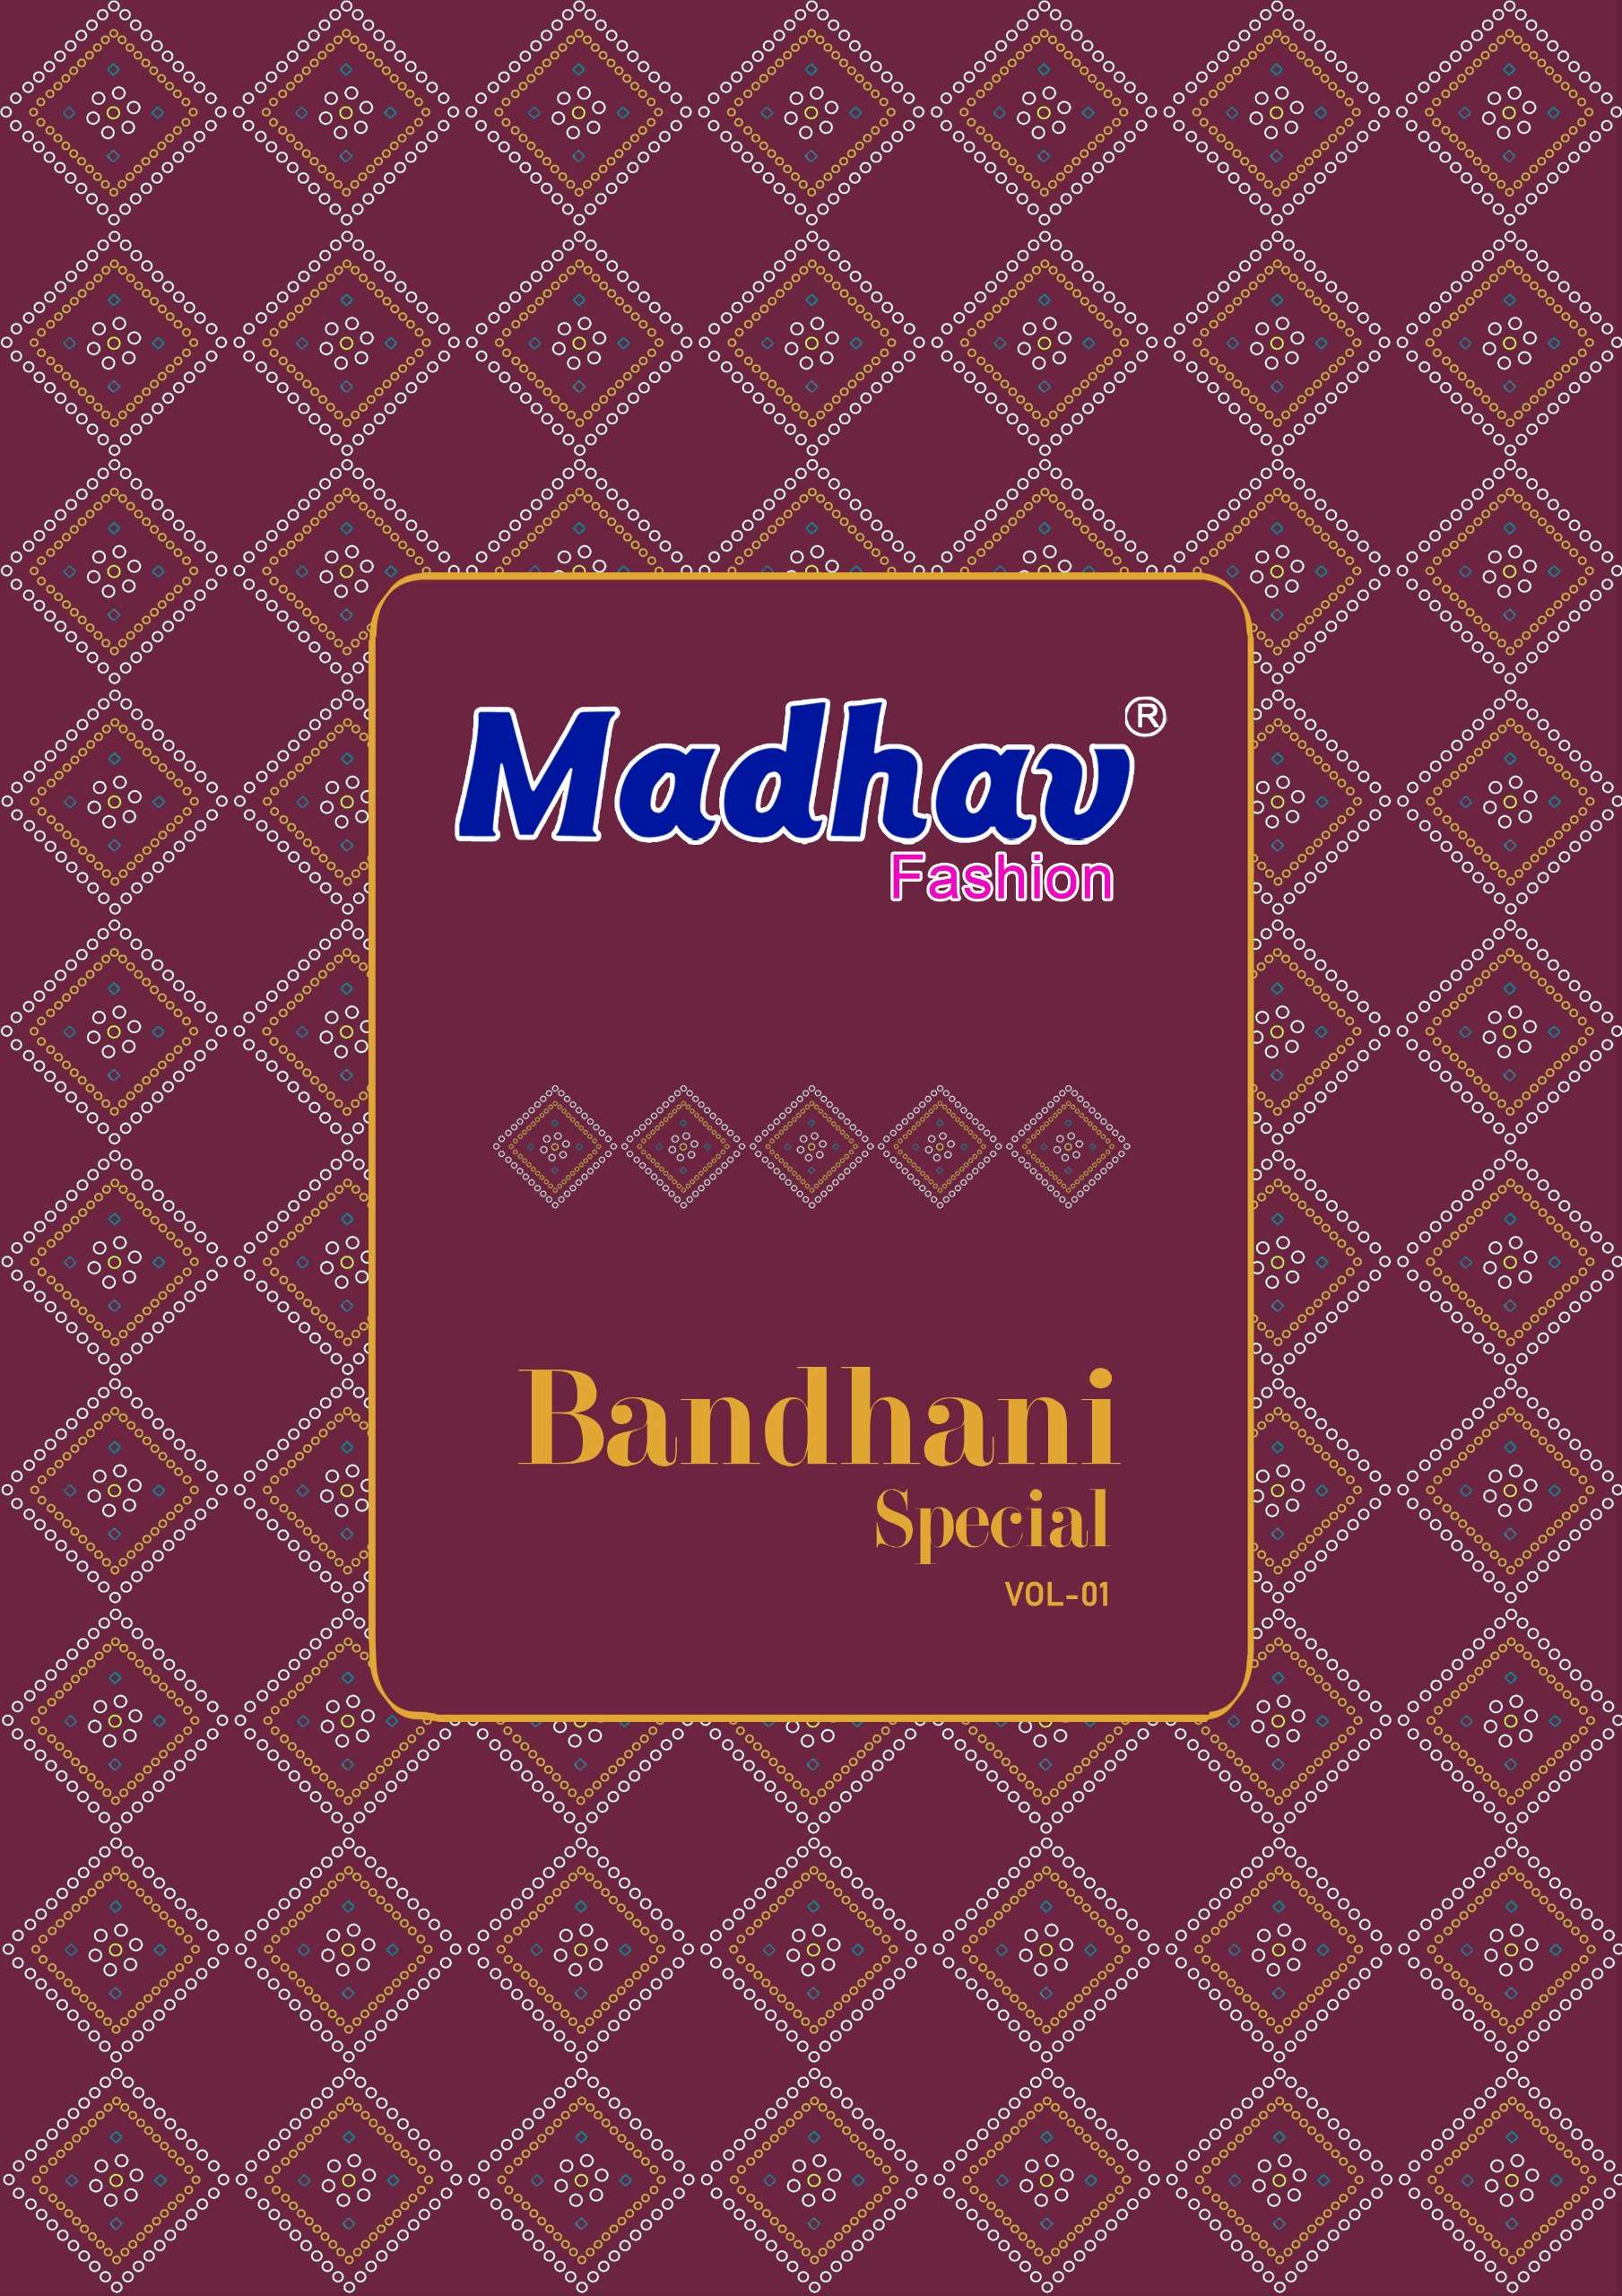 MADHAV FASHION BANDHANI SPECIAL VOL 1 